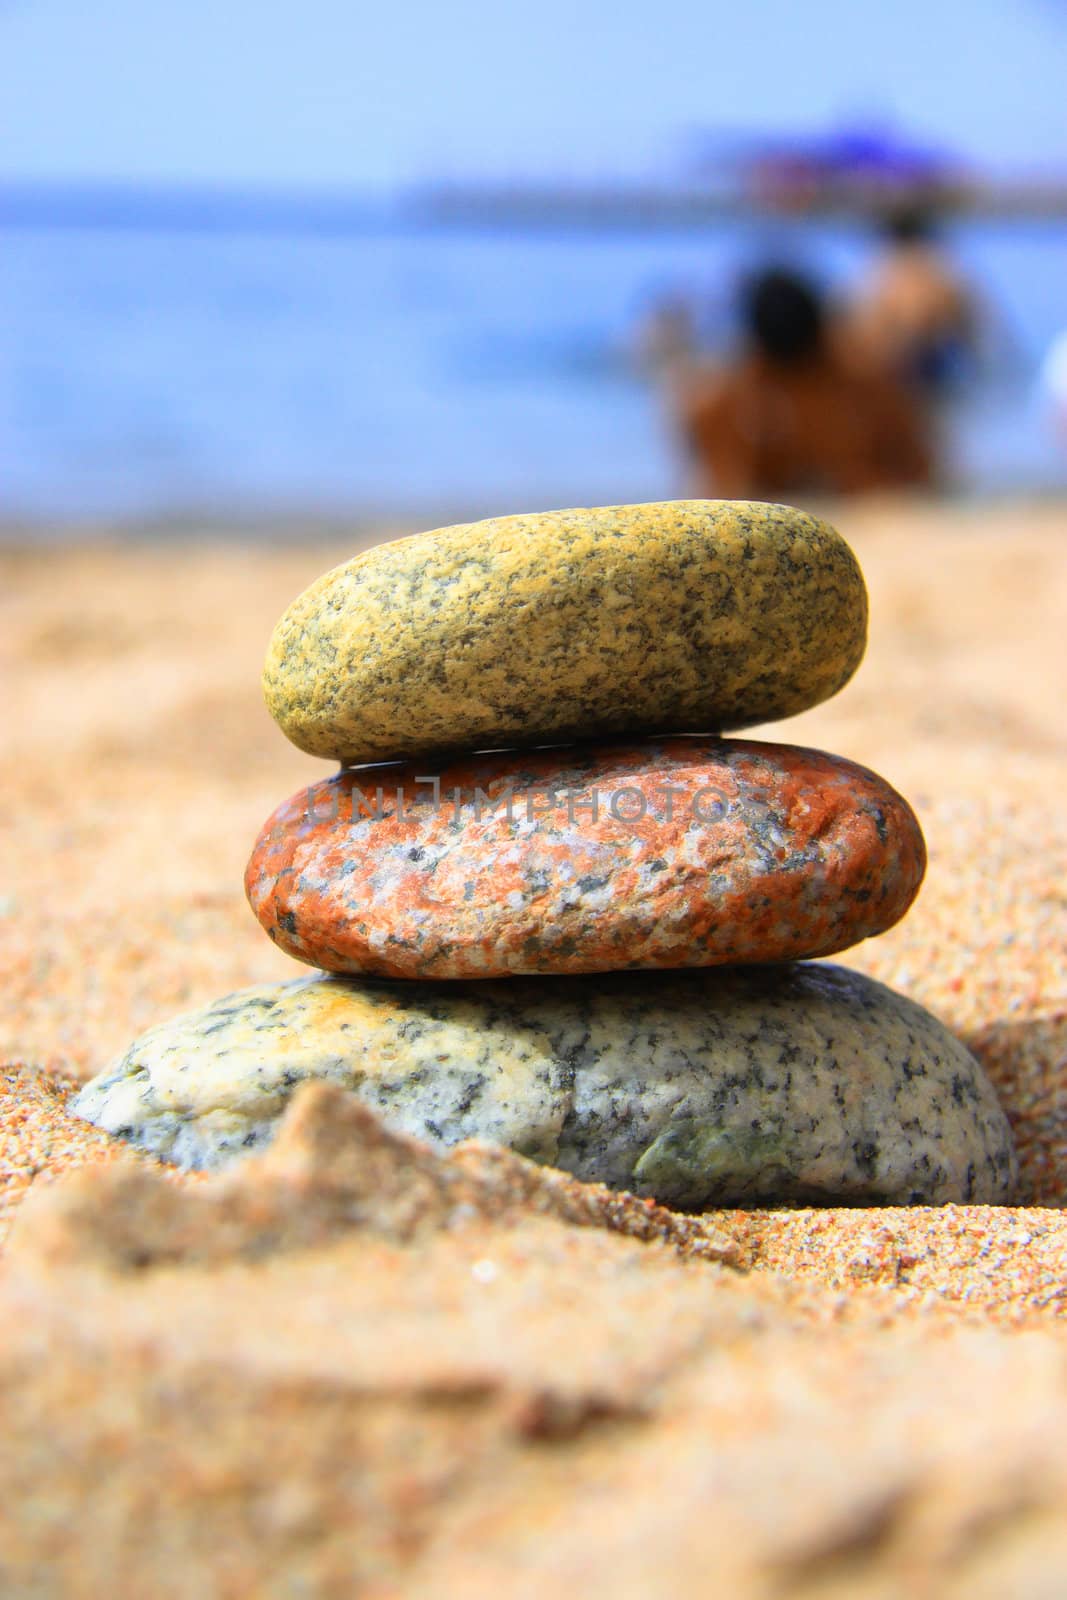 Stones on the seashore by Kudryashka